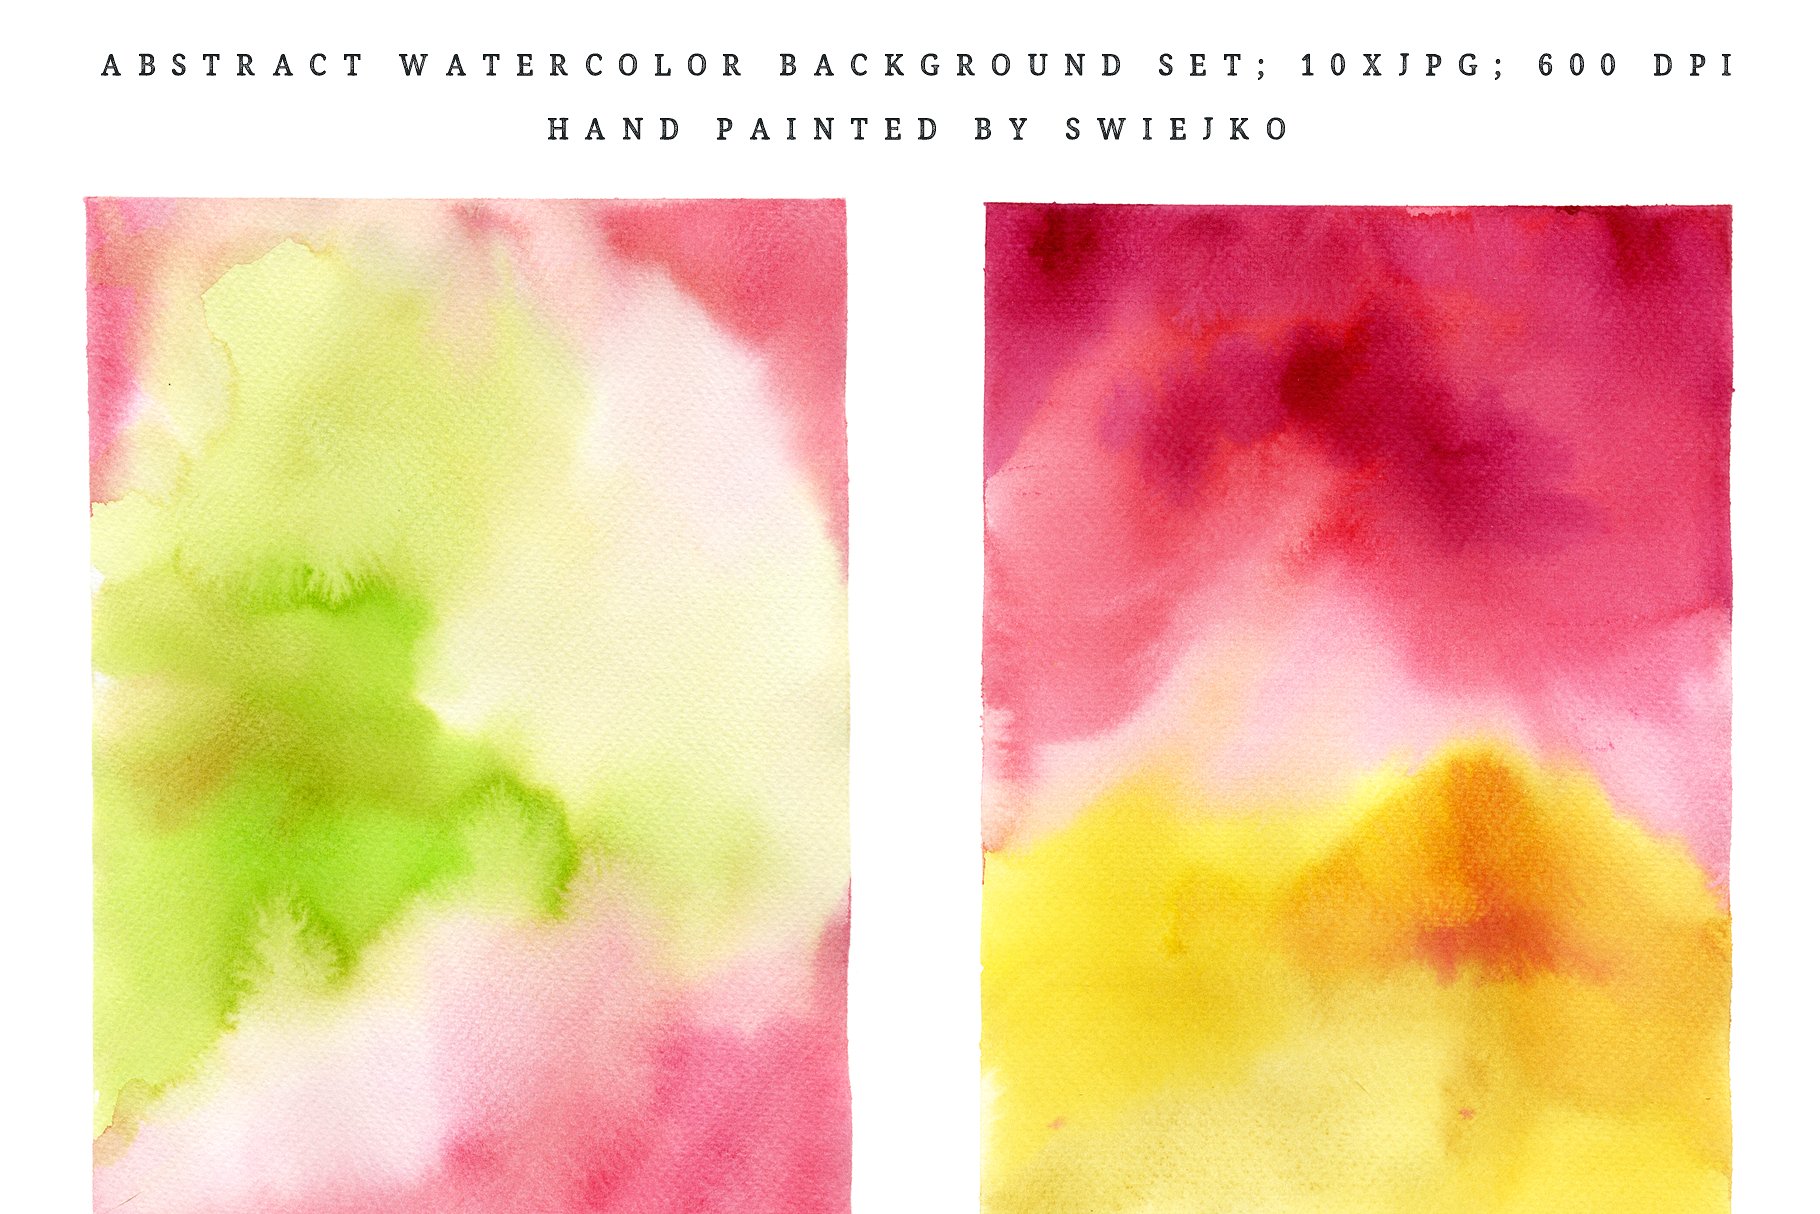 抽象印象派水彩背景 Abstract Watercolor Background插图(2)